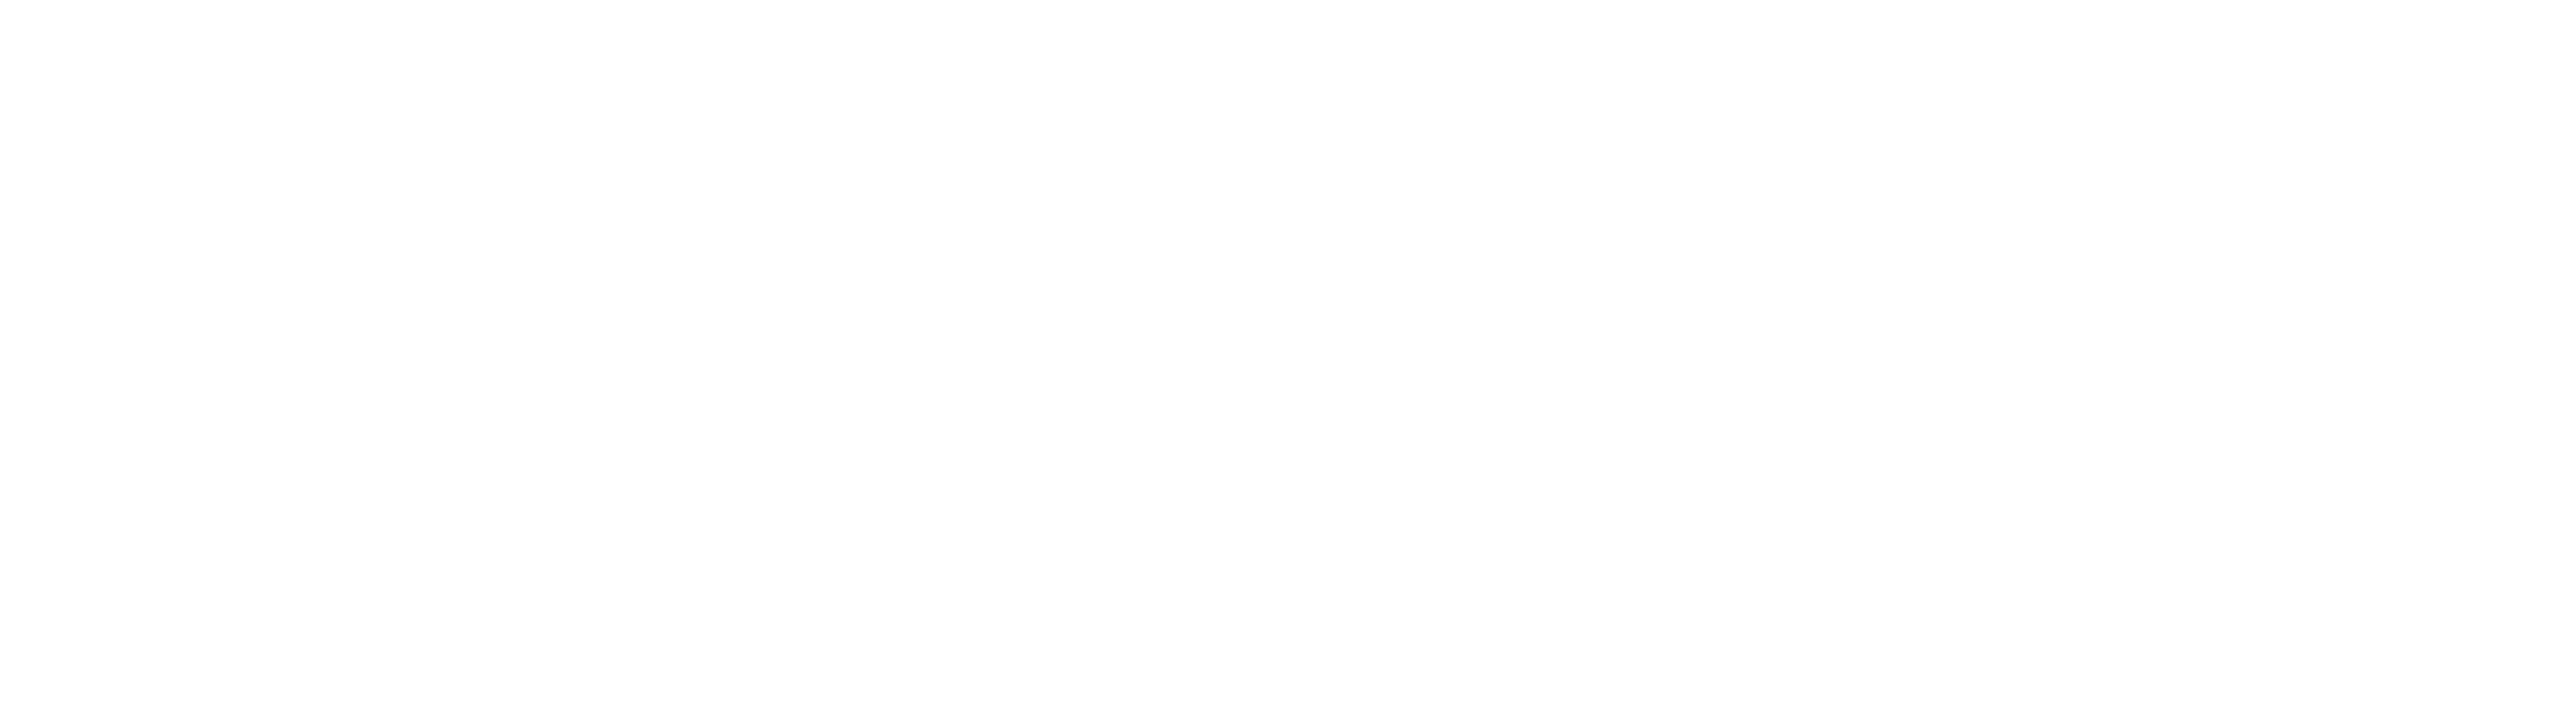 CogniFit Blog Logo